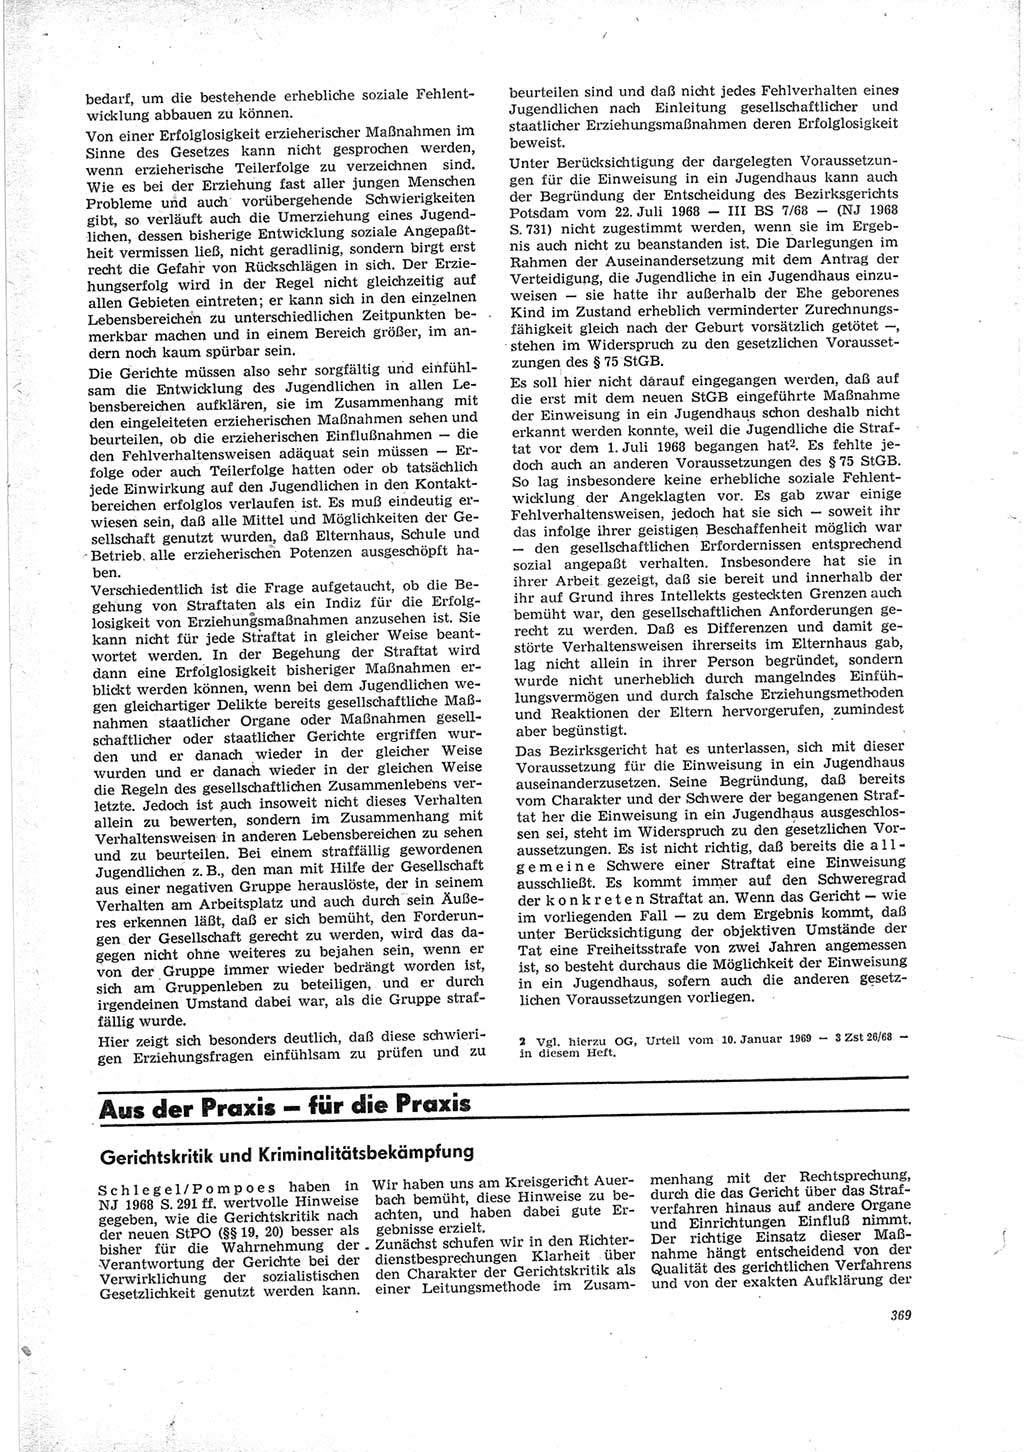 Neue Justiz (NJ), Zeitschrift für Recht und Rechtswissenschaft [Deutsche Demokratische Republik (DDR)], 23. Jahrgang 1969, Seite 369 (NJ DDR 1969, S. 369)